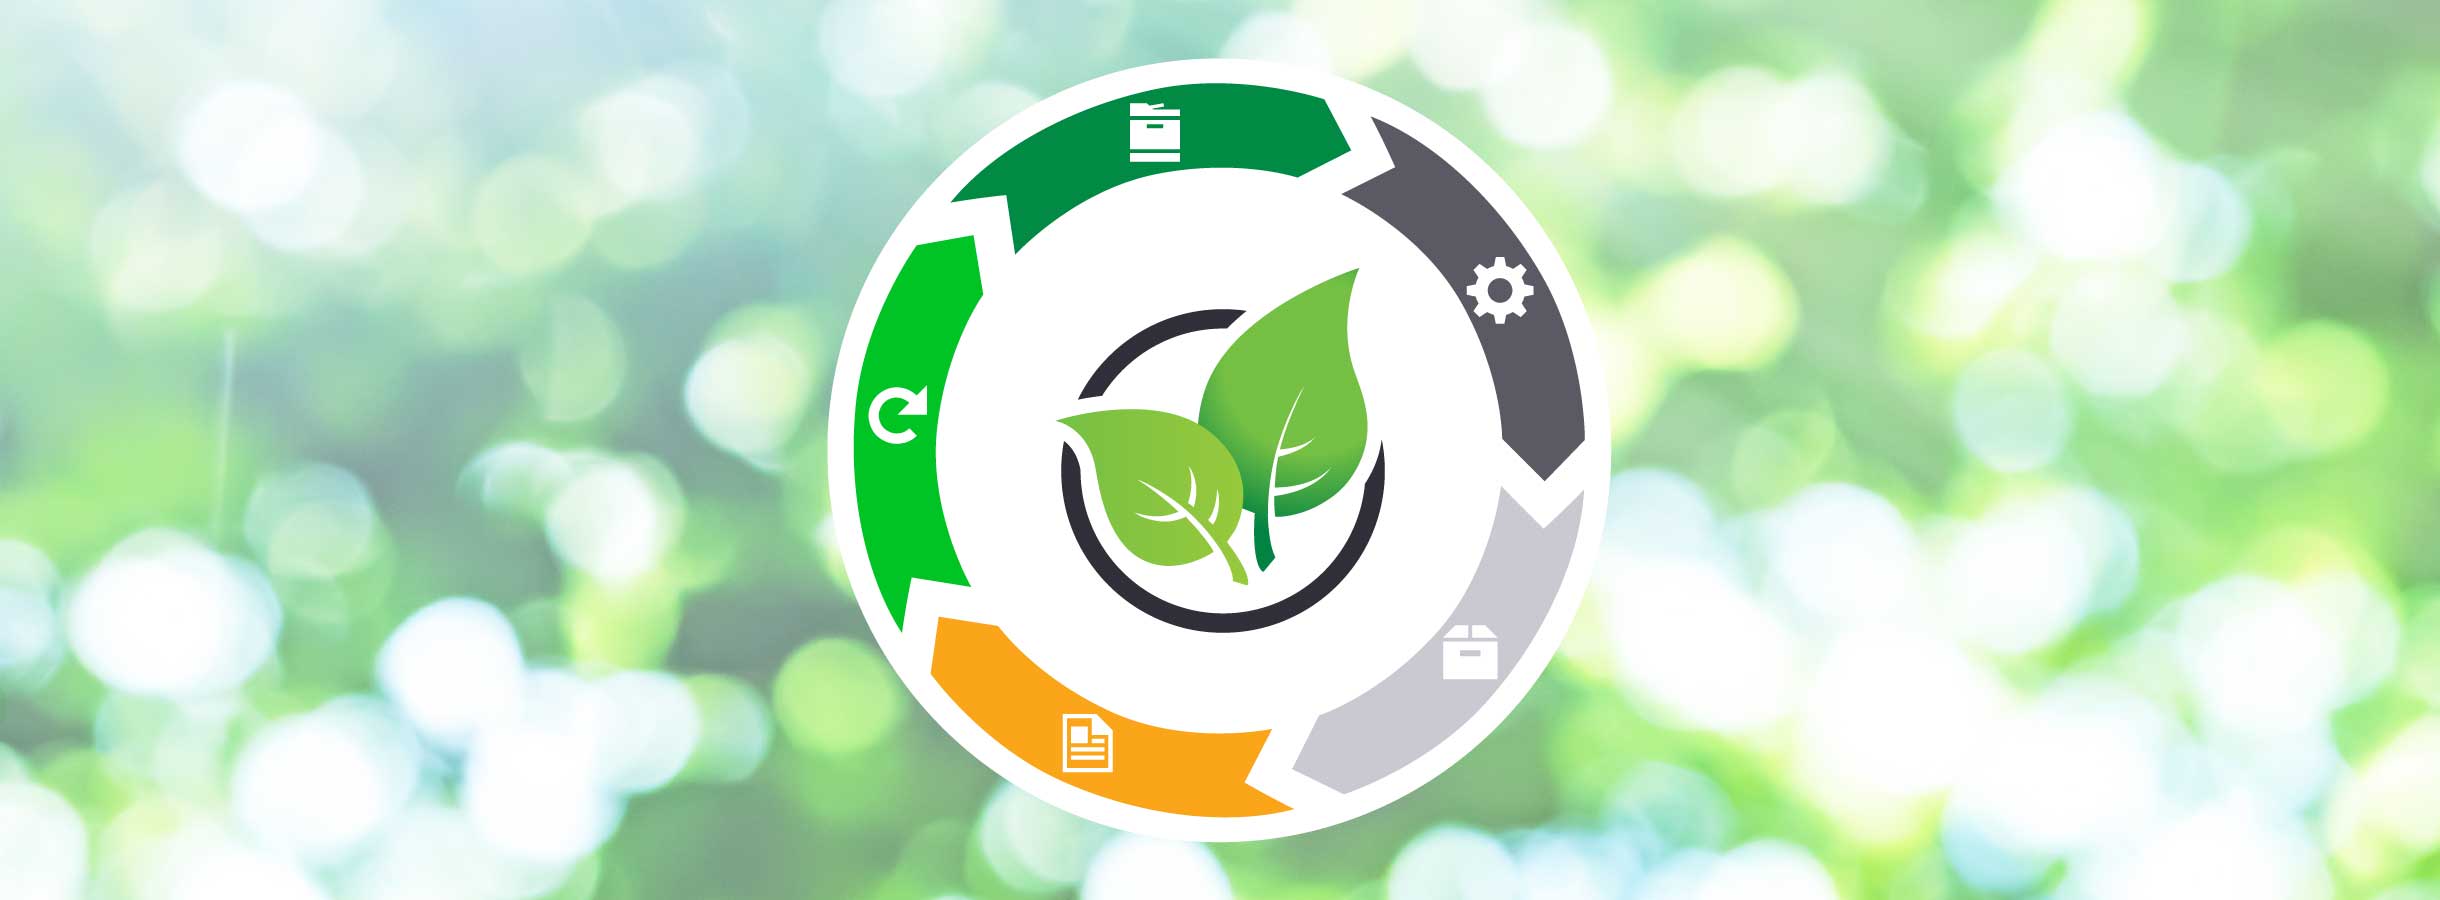 Ilustrace kruhového designu udržitelného spotřebního materiálu Lexmark.